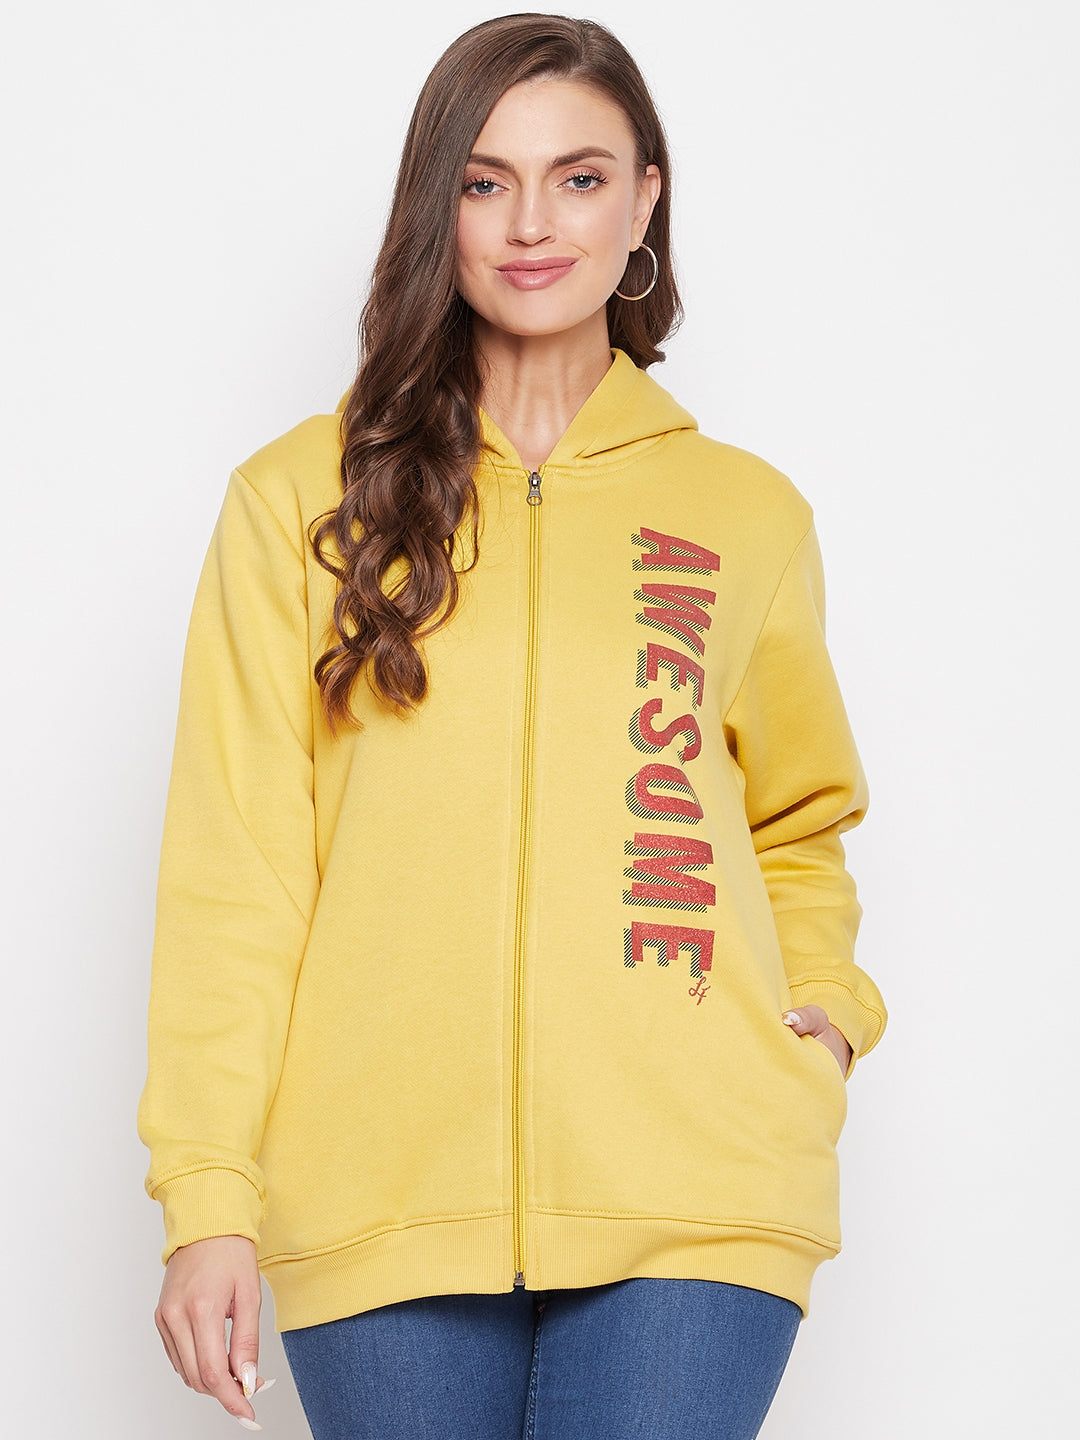 Livfree Women's Hoodie Full Sleeves Solid Sweatshirt - Athletic Gold (Zipper)